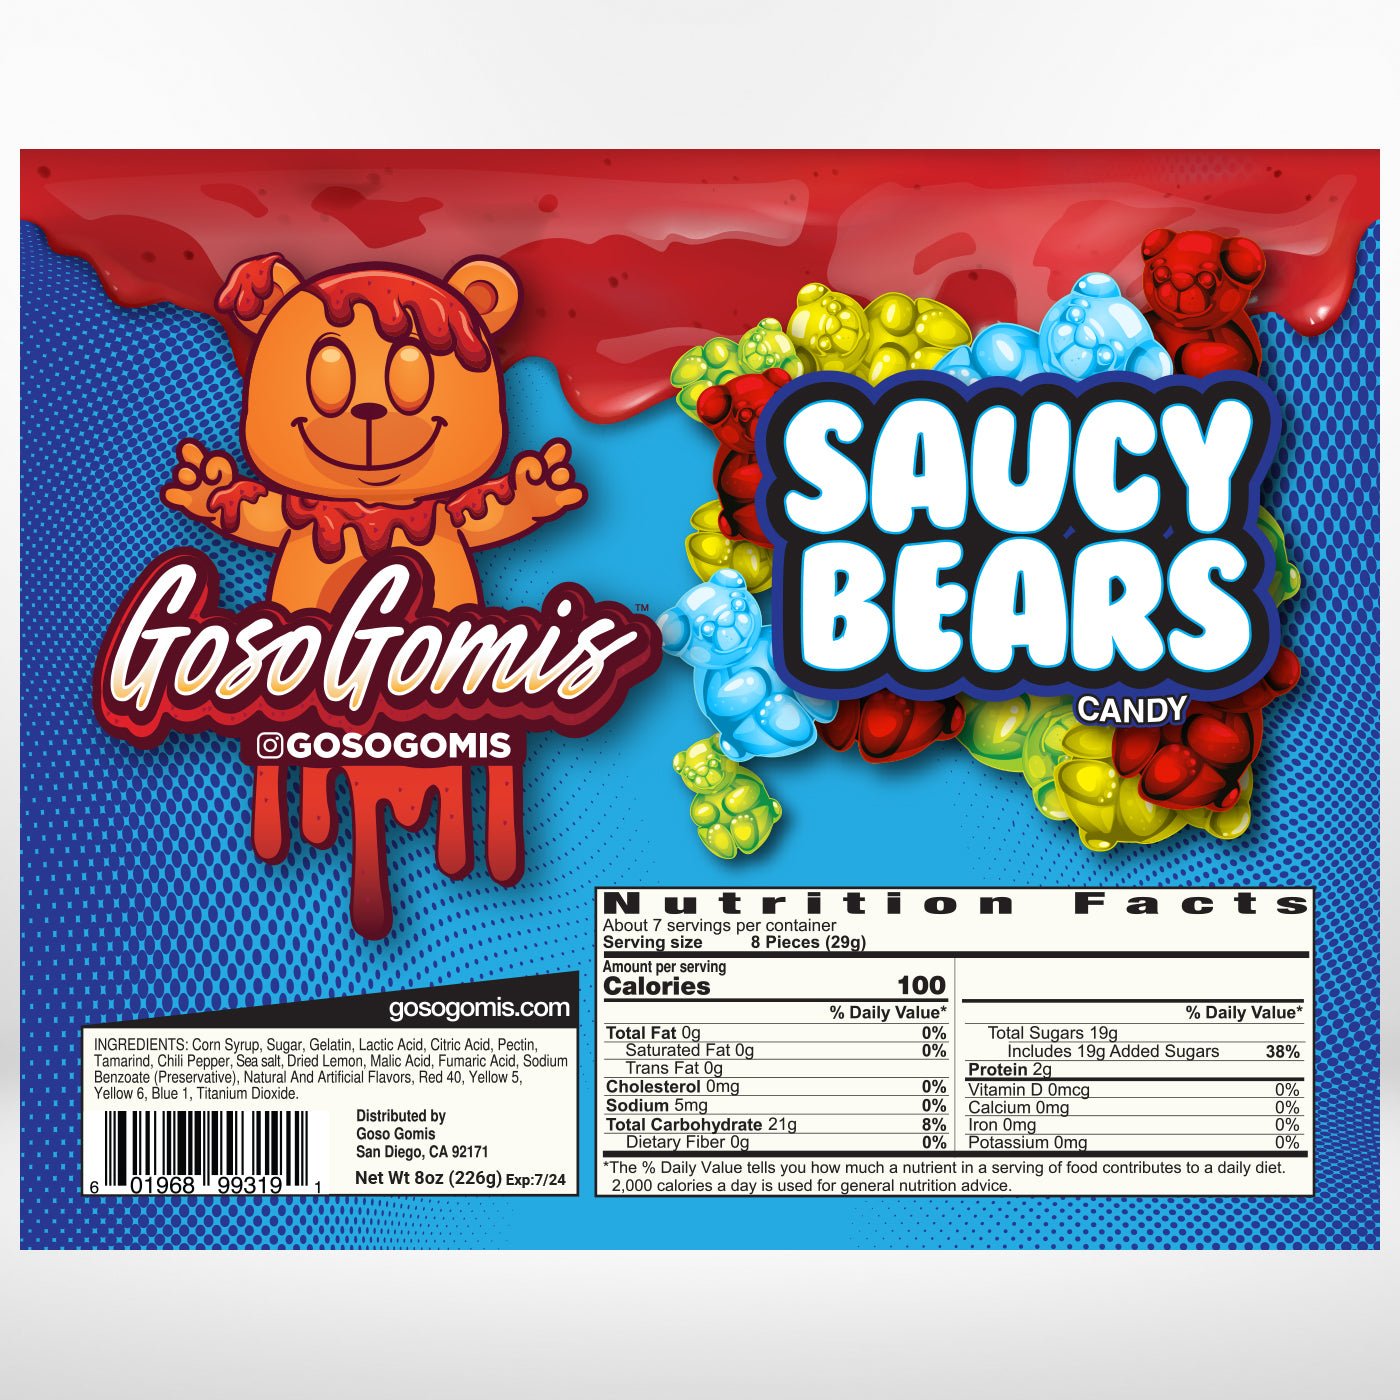 Saucy Bears